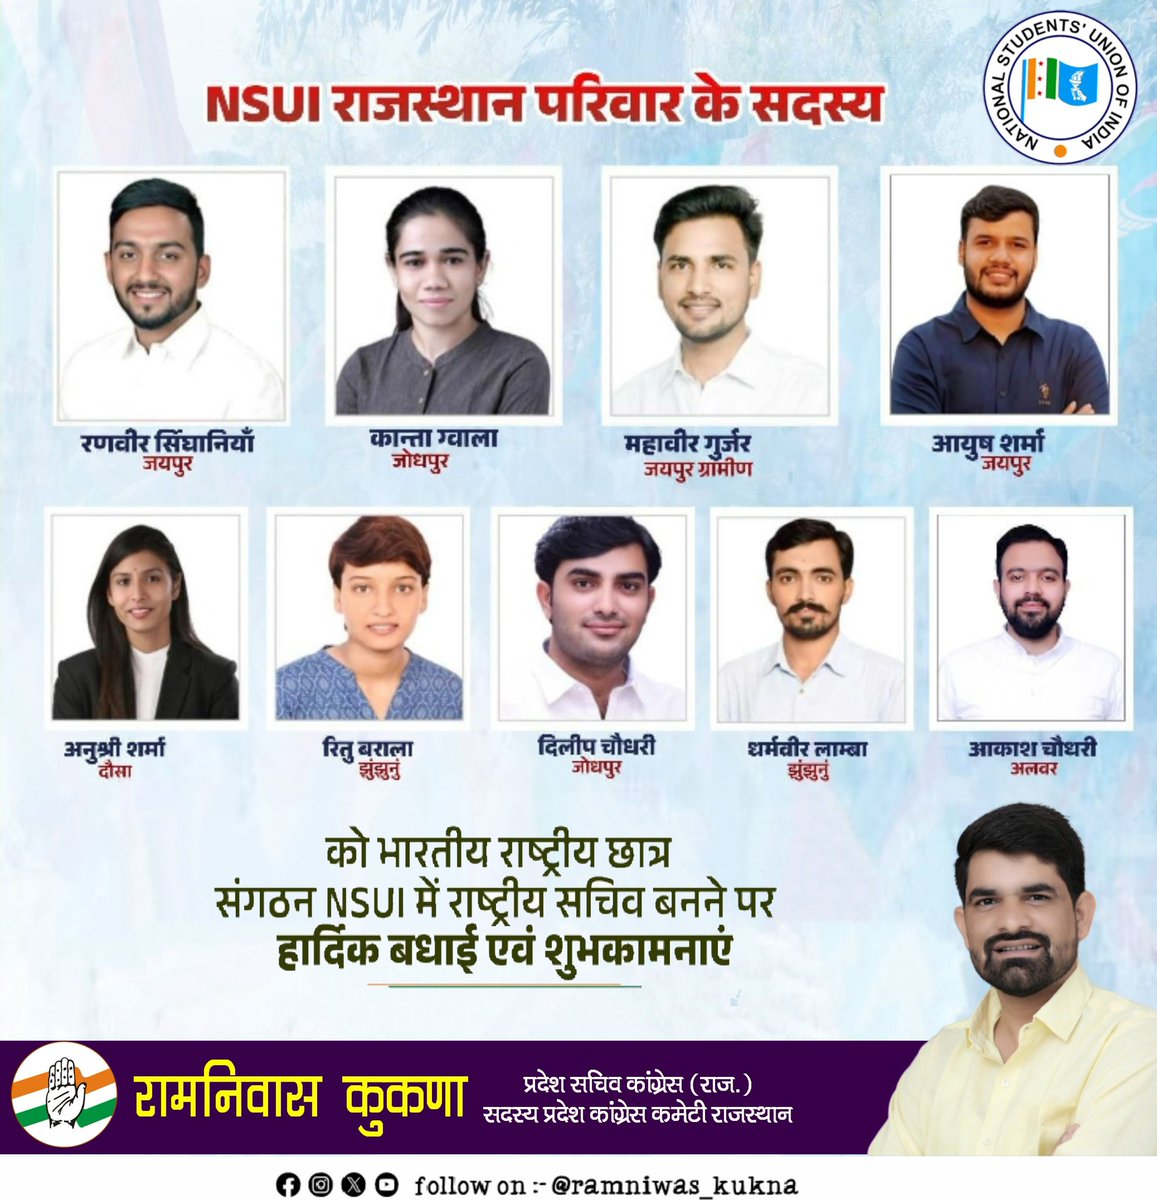 NSUI राजस्थान परिवार के सदस्यों को राष्ट्रीय छात्र संगठन @nsui में राष्ट्रीय सचिव बनाए जाने पर सभी को हार्दिक बधाई एवं शुभकामनाएं। आपकी लगन और प्रतिबद्धता निश्चित रूप से छात्र समुदाय में सकारात्मक बदलाव लाएगी ! मैं आपके उज्जवल राजनीतिक भविष्य की कामना करता हूँ।